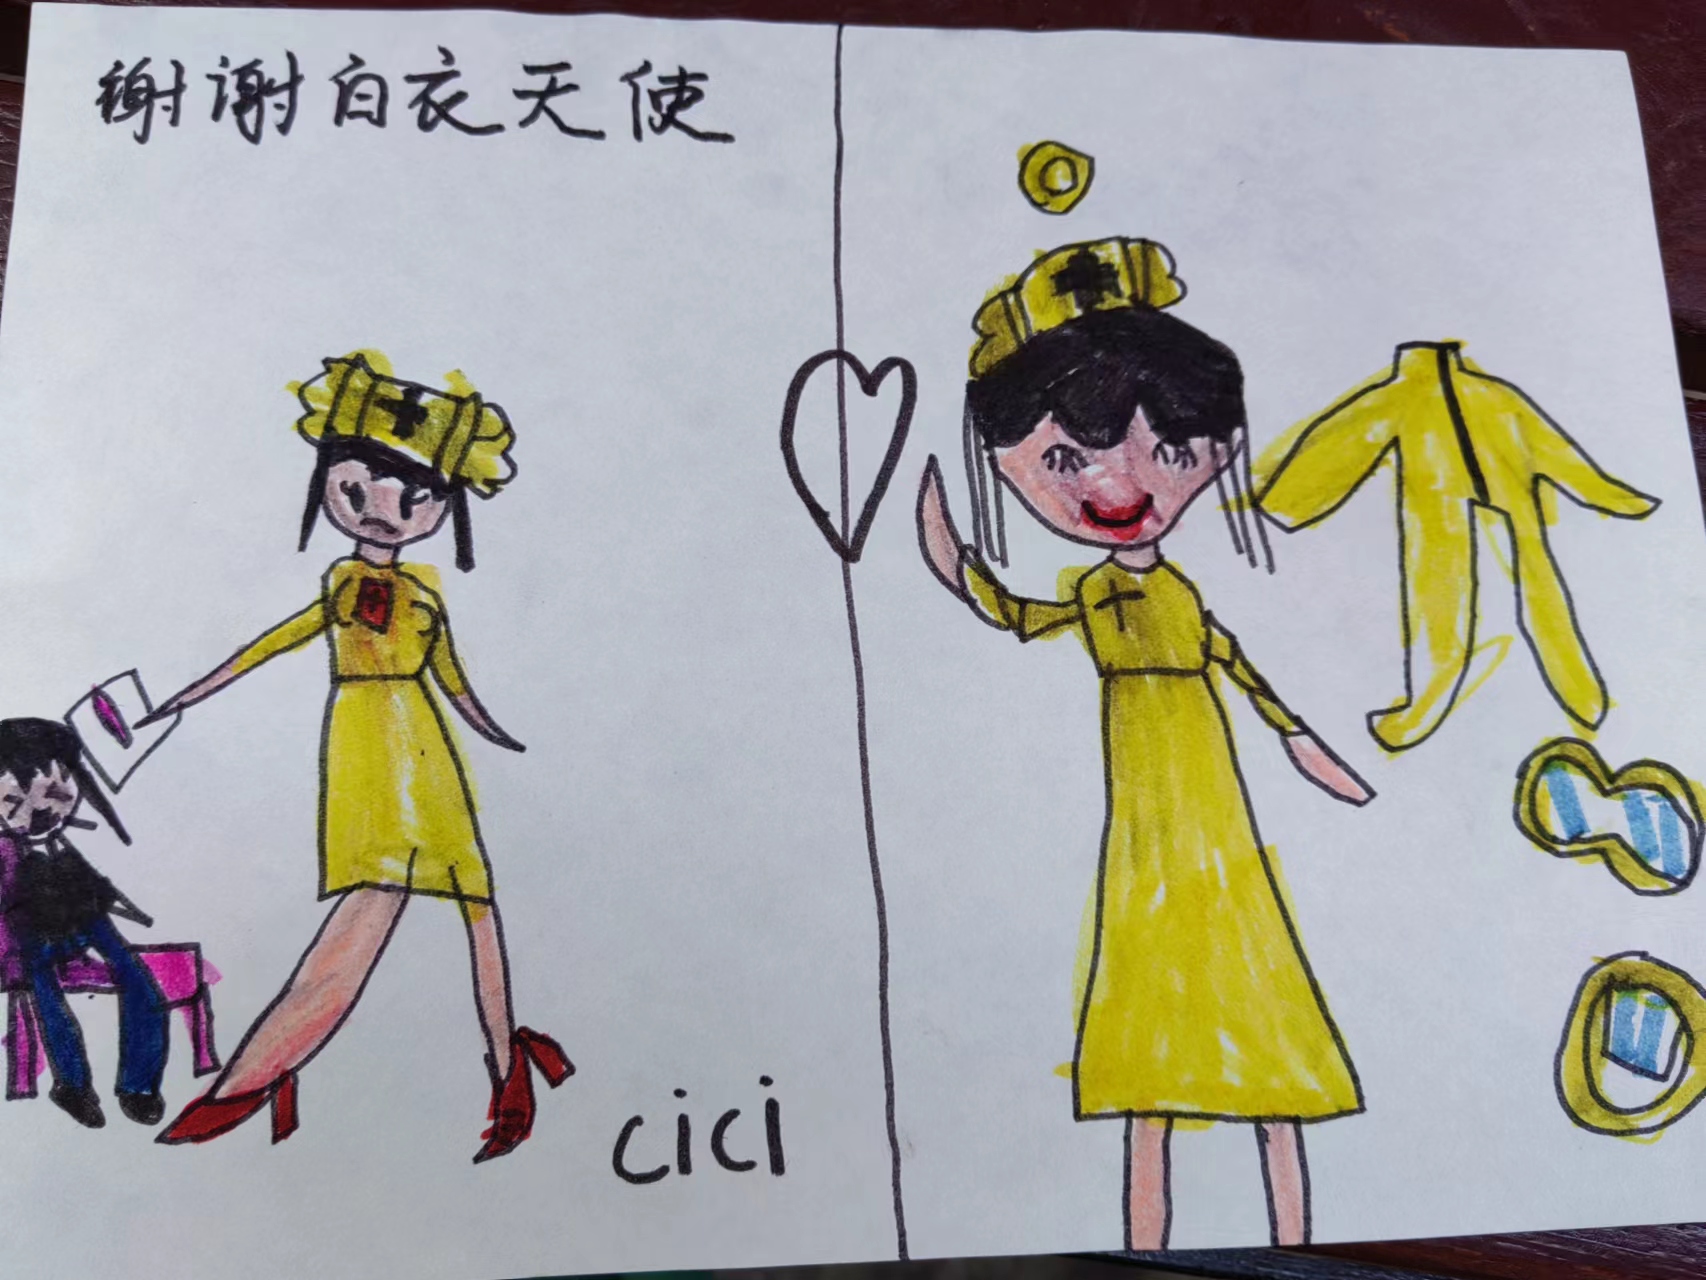 居民小朋友送給楊麗華的愛心畫。